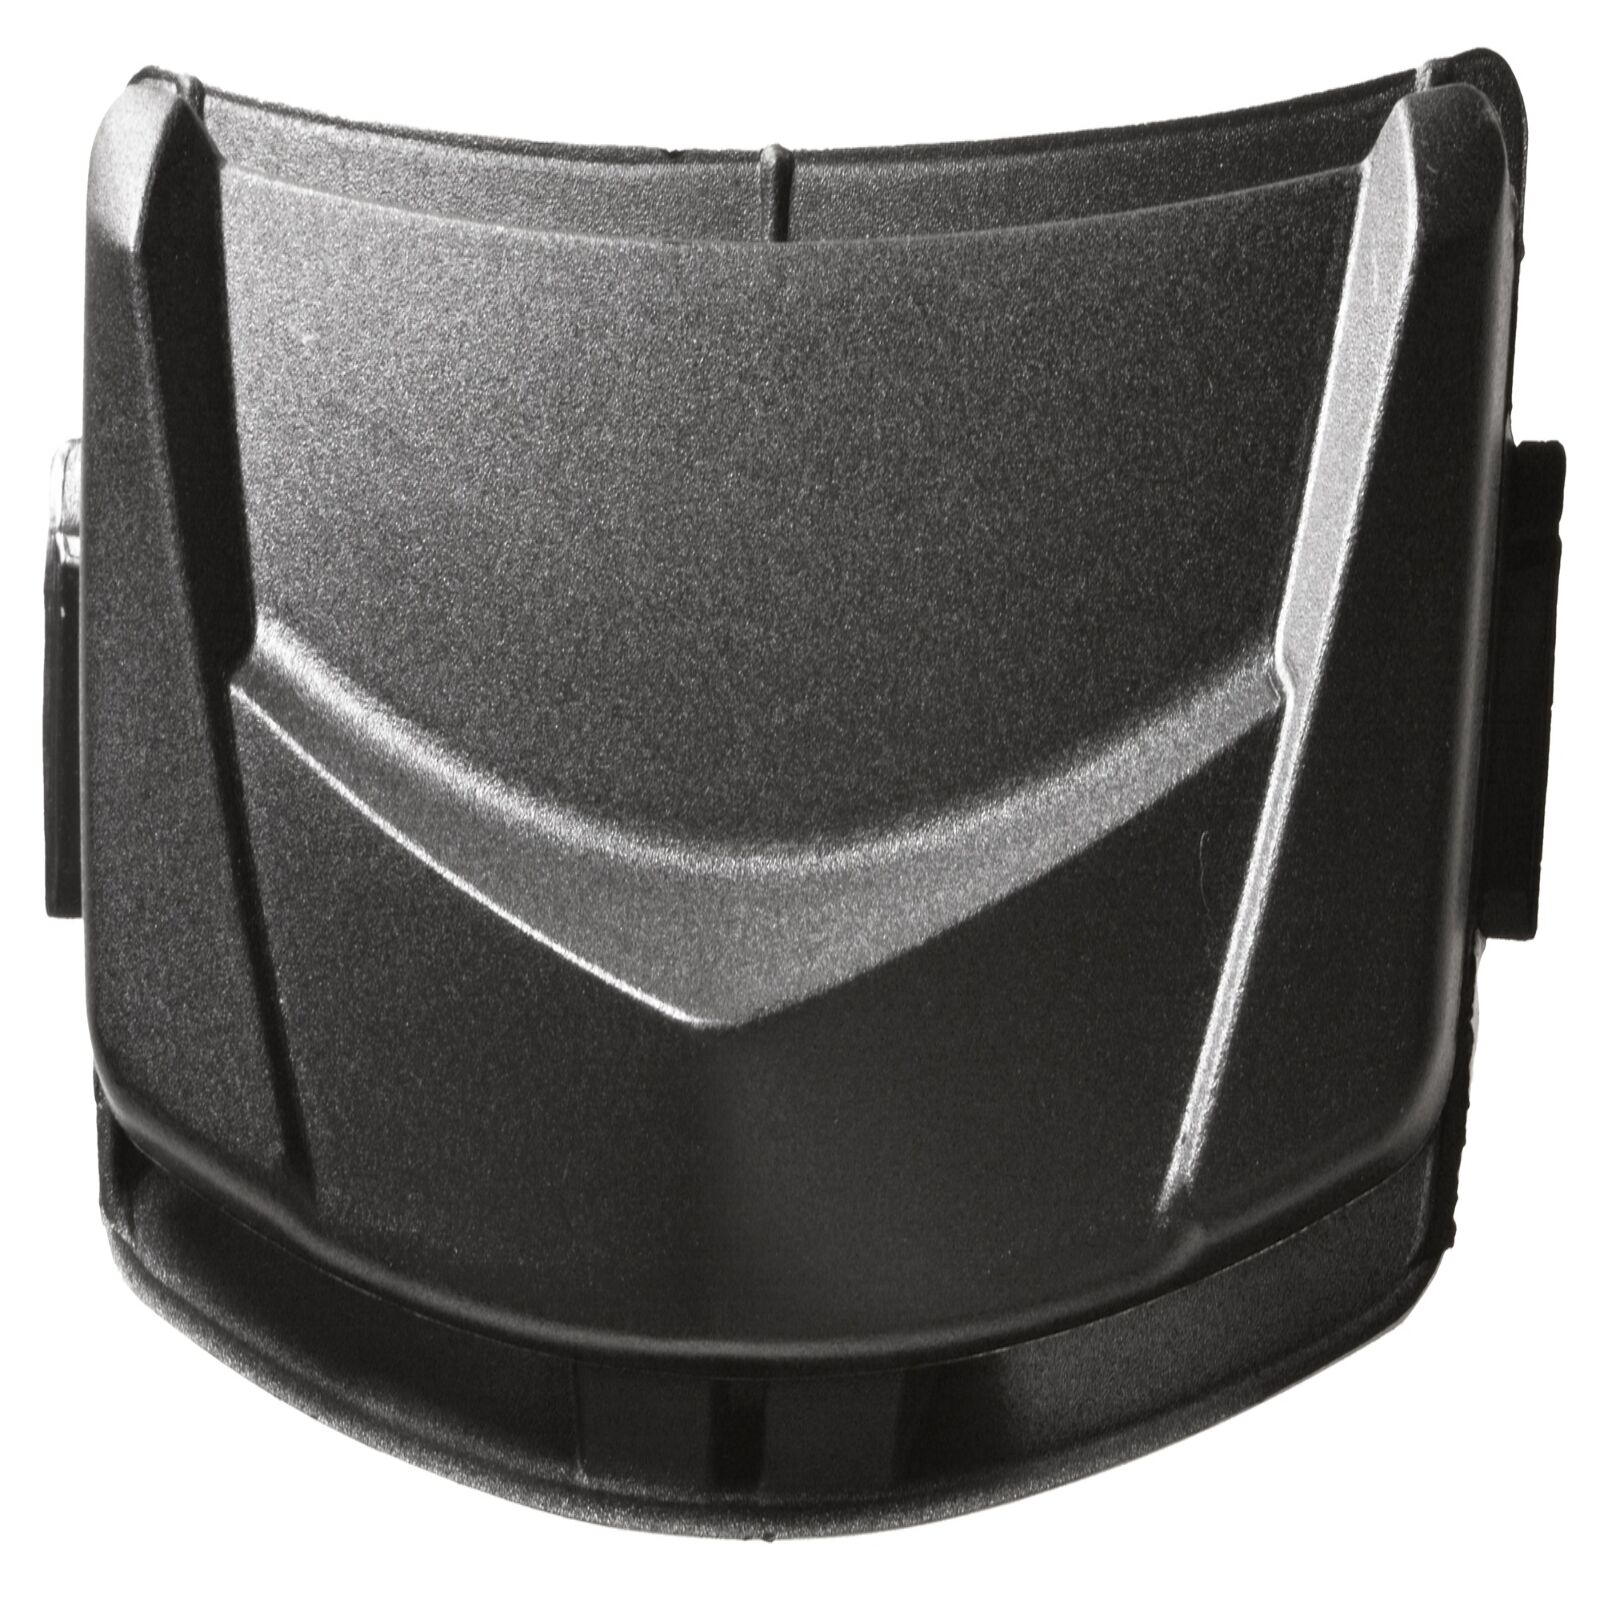 Obrázek produktu vrchní kryt ventilace pro přilby STORM, AIROH (černý) 6462